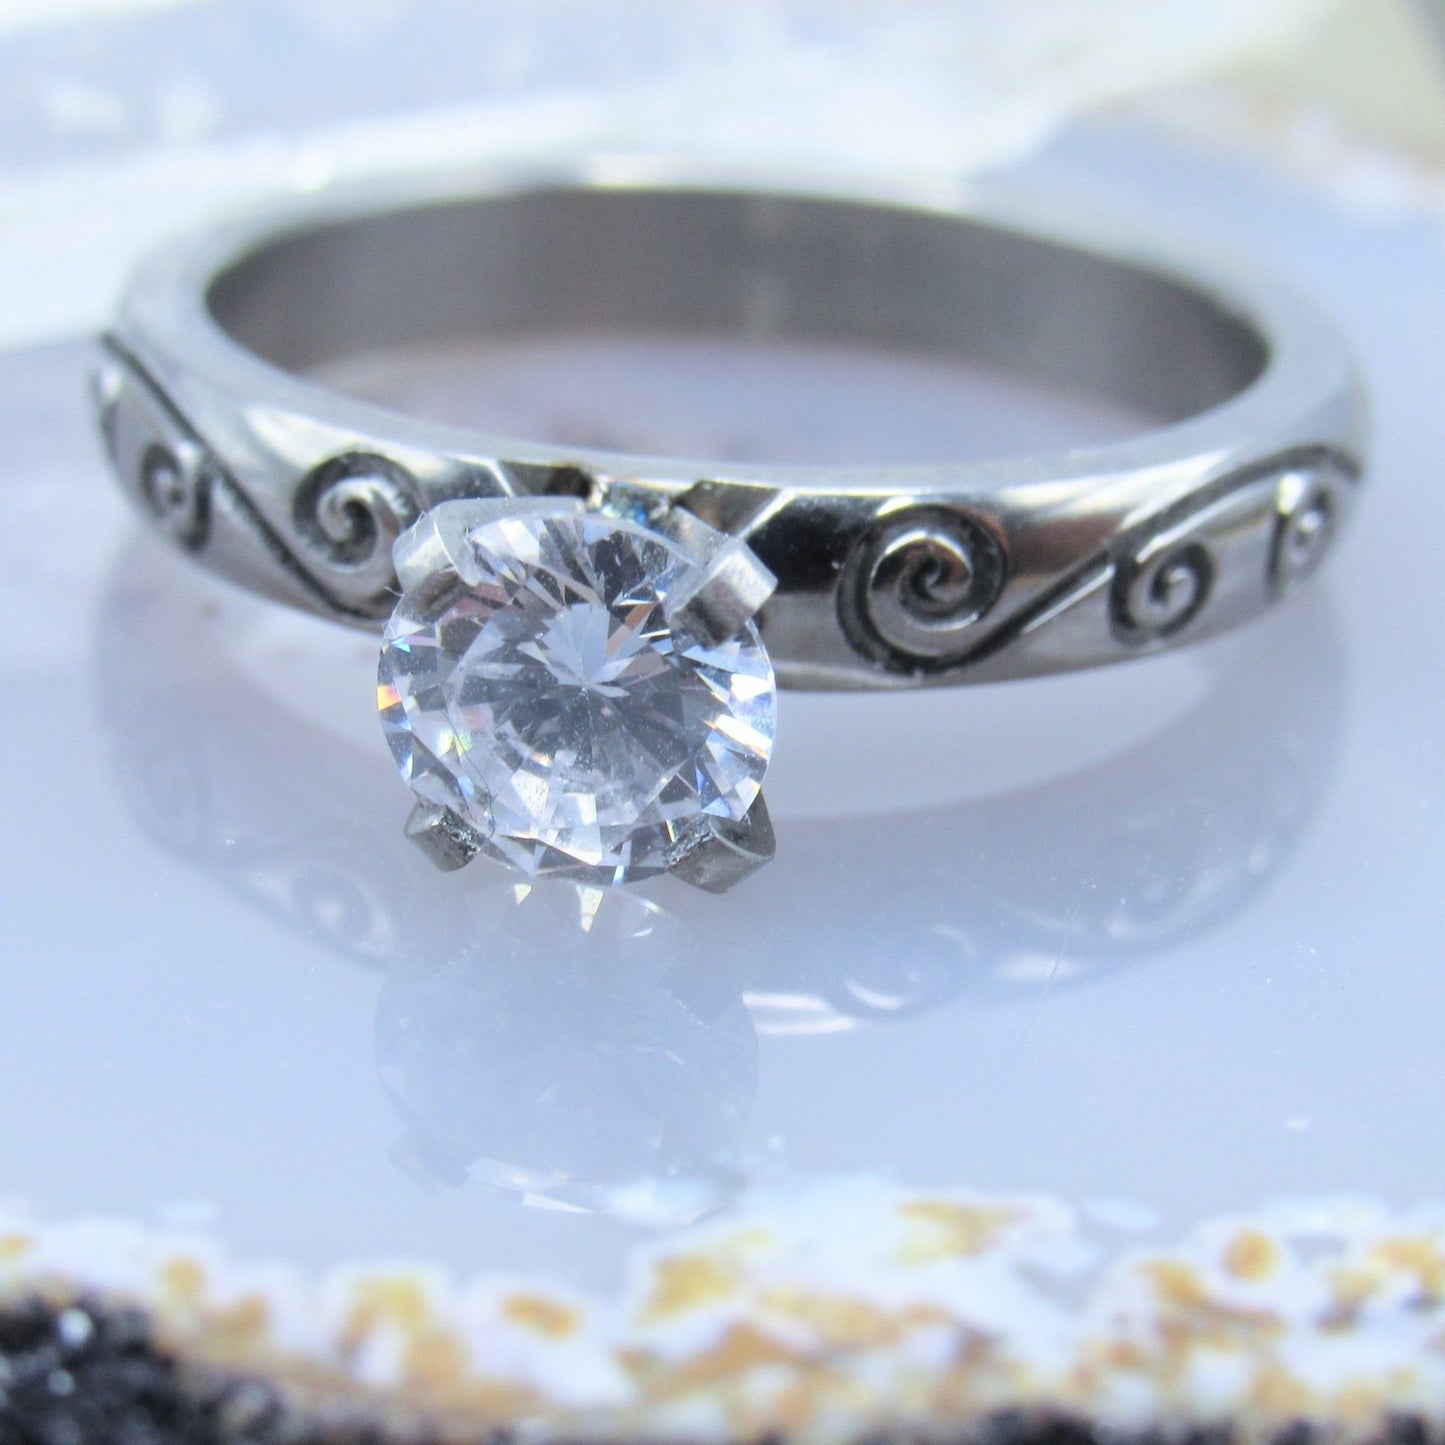 Womens size 8 titanium cz filigree swirl engraved promise engagement wedding ring band prong set gemstone - Siren Body Jewelry